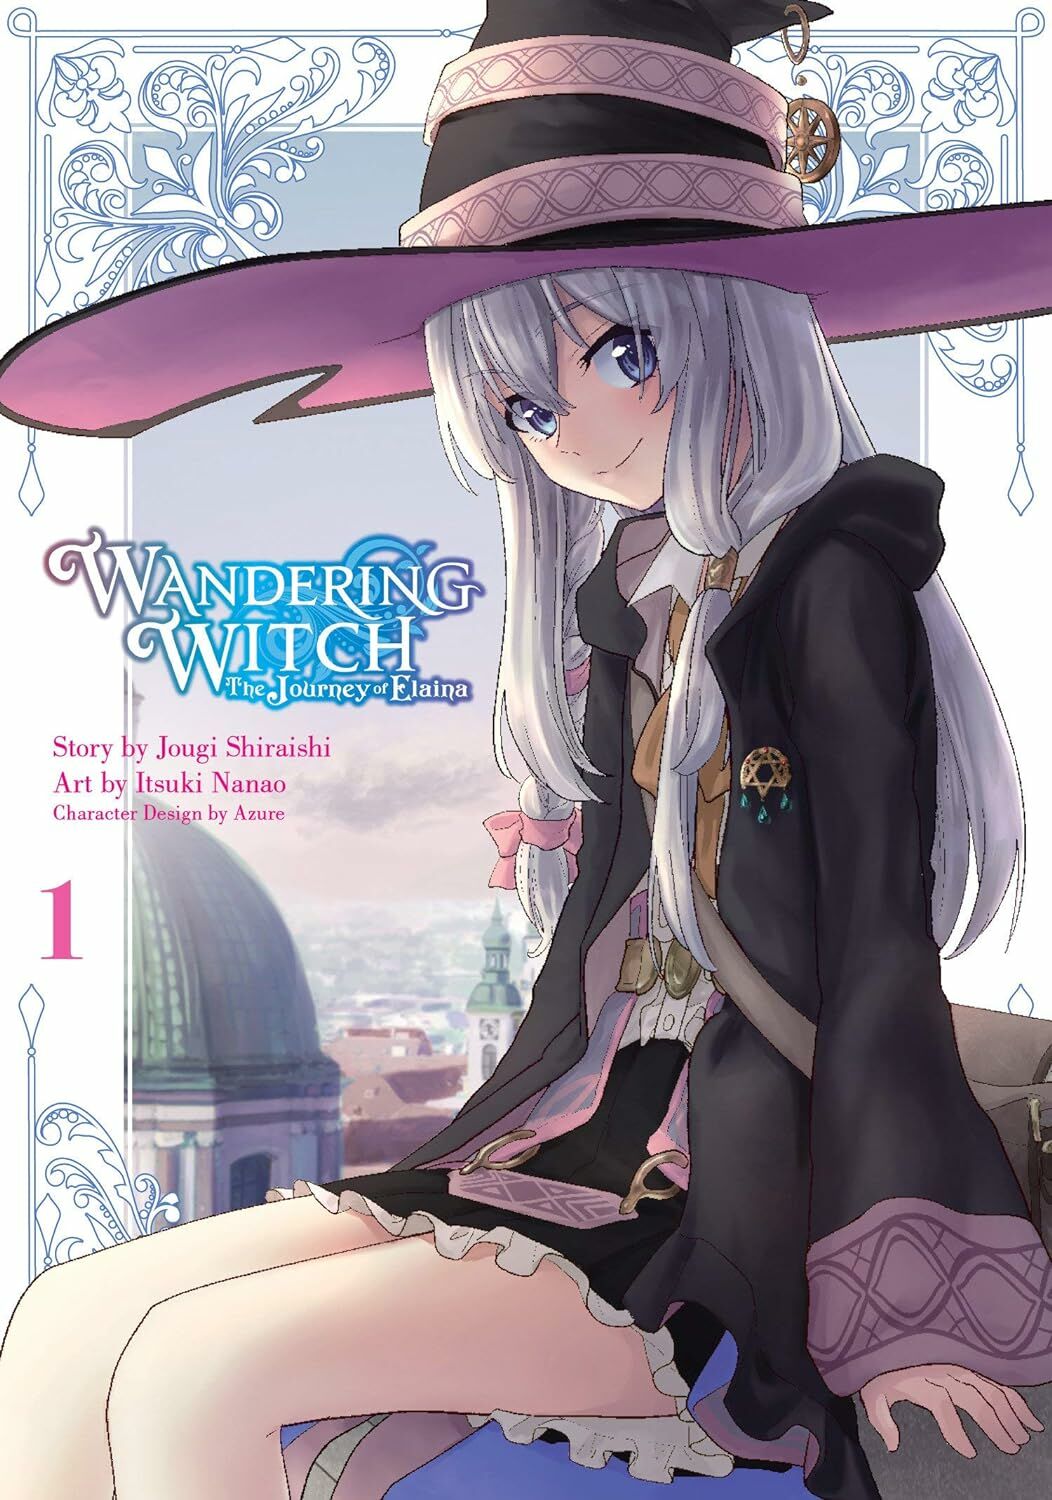 Wandering Witch 1 (Manga): The Journey of Elaina